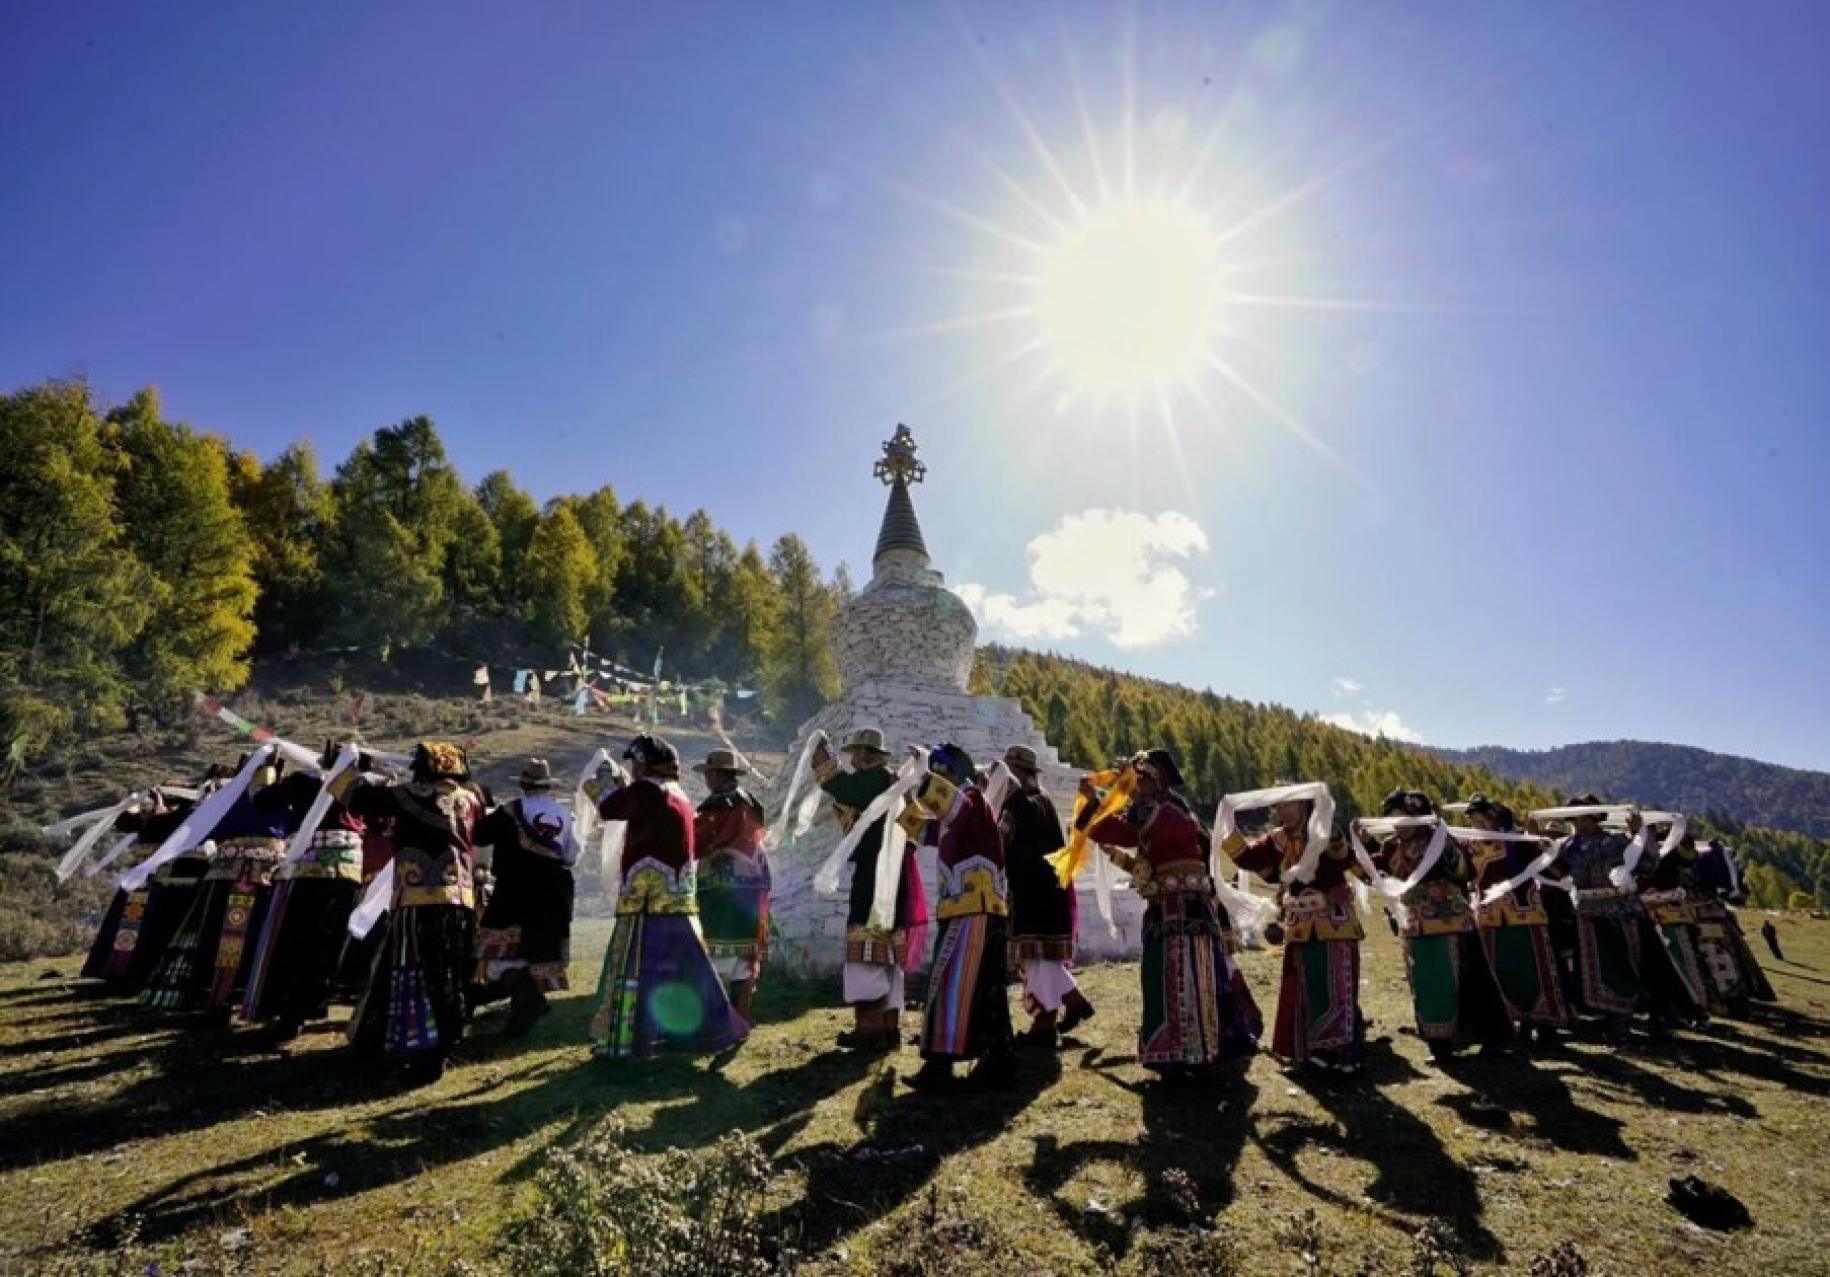 Mujeres de la minoría étnica bailando al sol, participando en la ceremonia del pueblo de Jiajin.